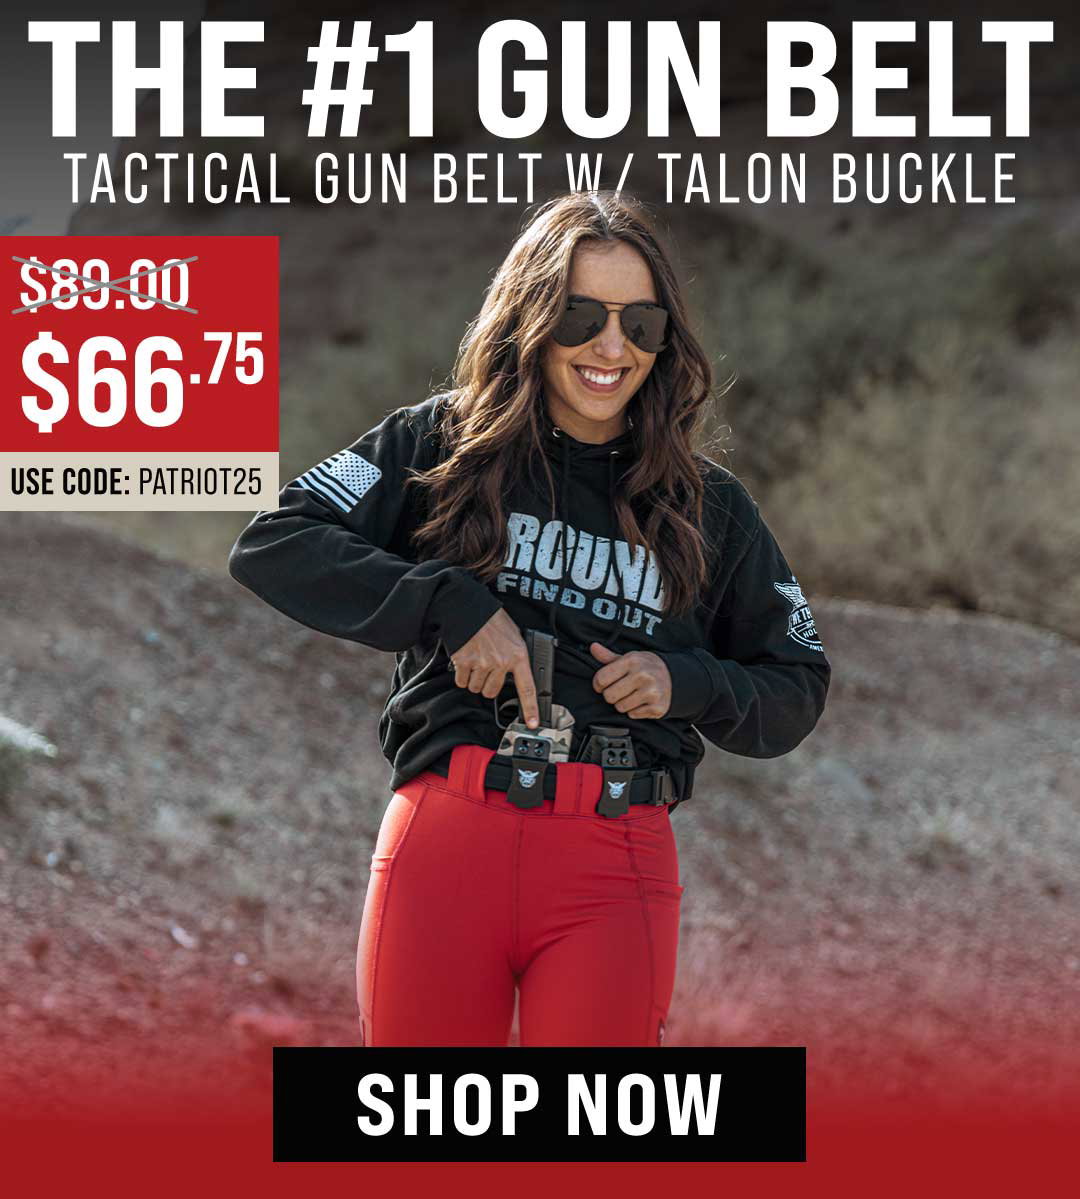 The #1 Gun Belt